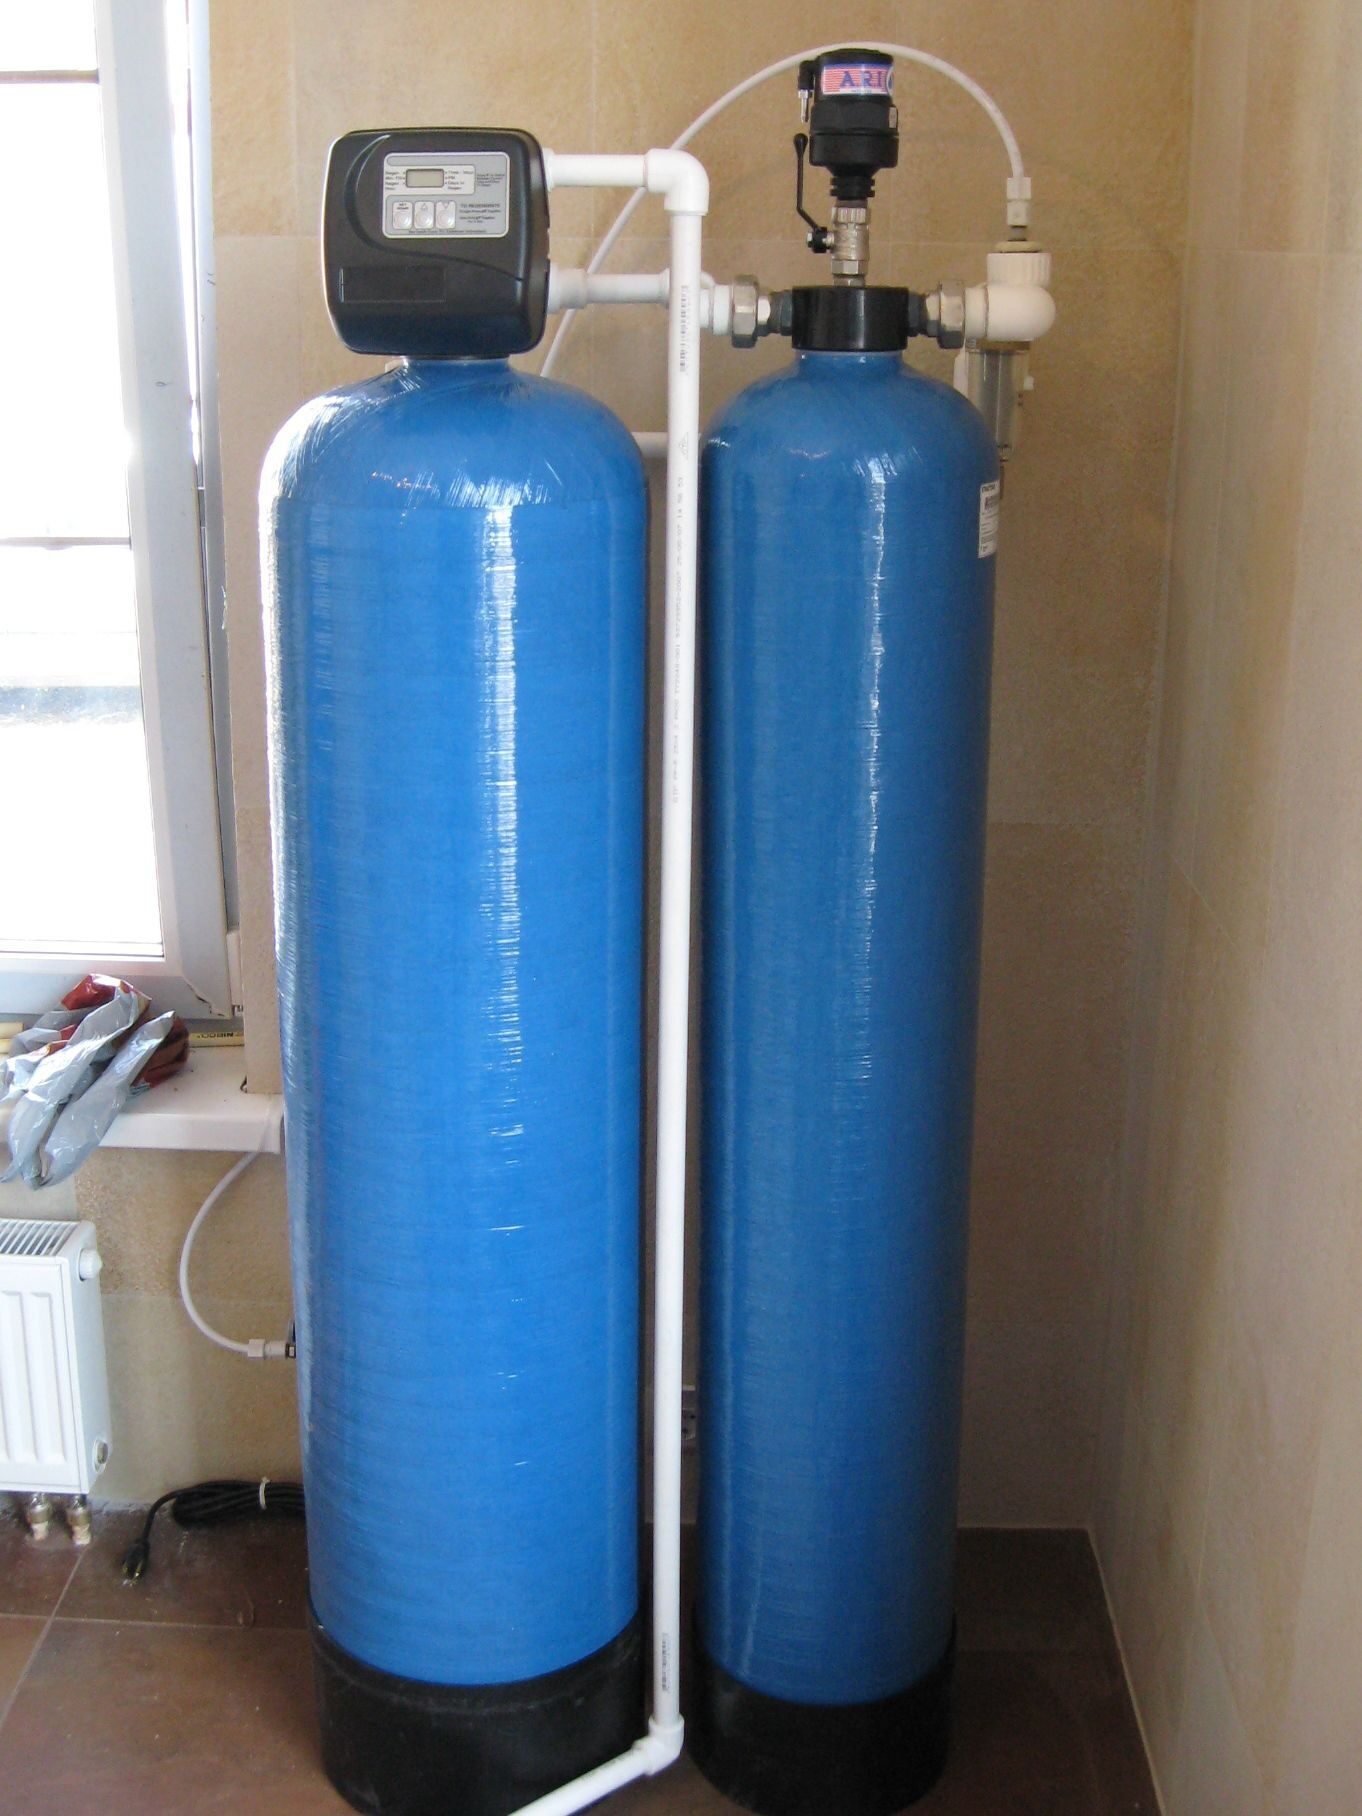 Аэрационная колонна для очистки воды. Система очистки обезжелезивания воды. Колонна 1054 обезжелезивания. Аэрационная колонна для очистки воды 1054. Система обезжелезивания воды (очистка воды от железа).